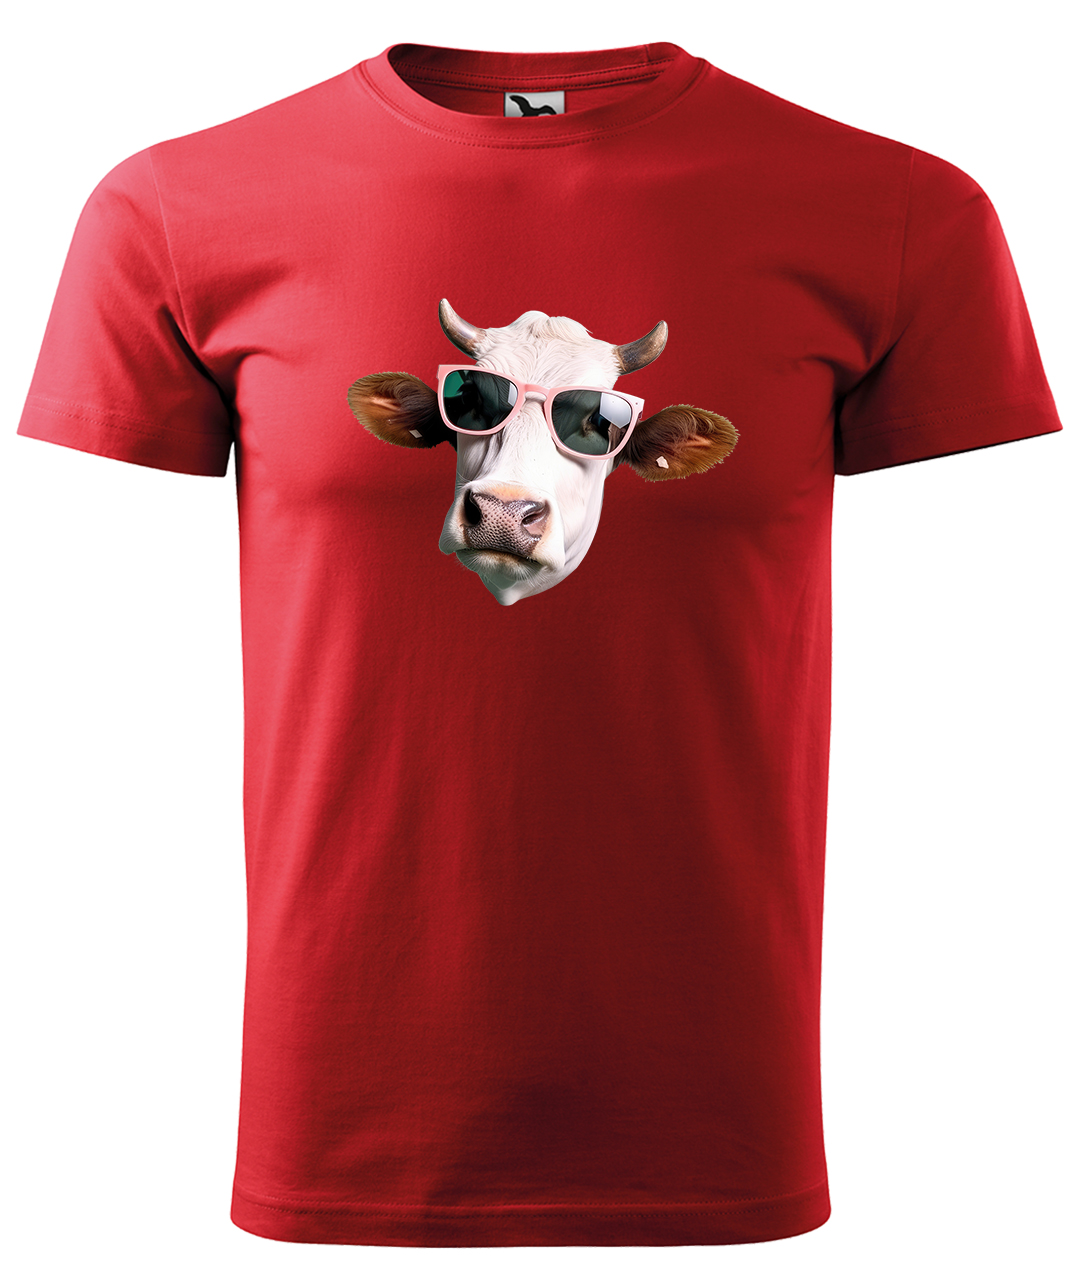 Dětské tričko s krávou - Kráva v brýlích Velikost: 10 let / 146 cm, Barva: Červená (07), Délka rukávu: Krátký rukáv